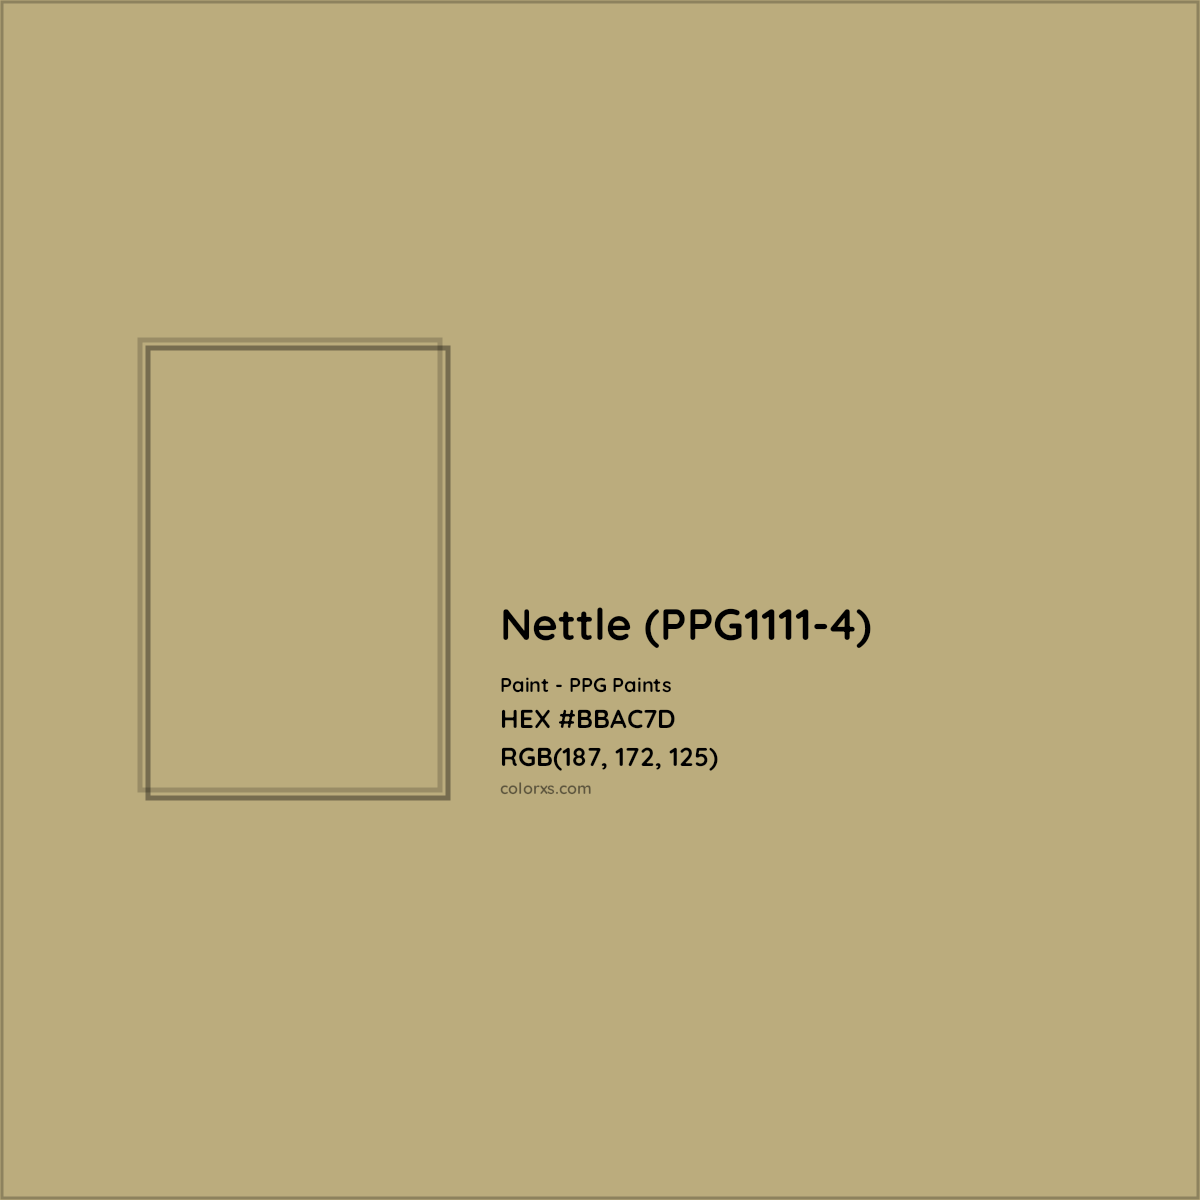 HEX #BBAC7D Nettle (PPG1111-4) Paint PPG Paints - Color Code